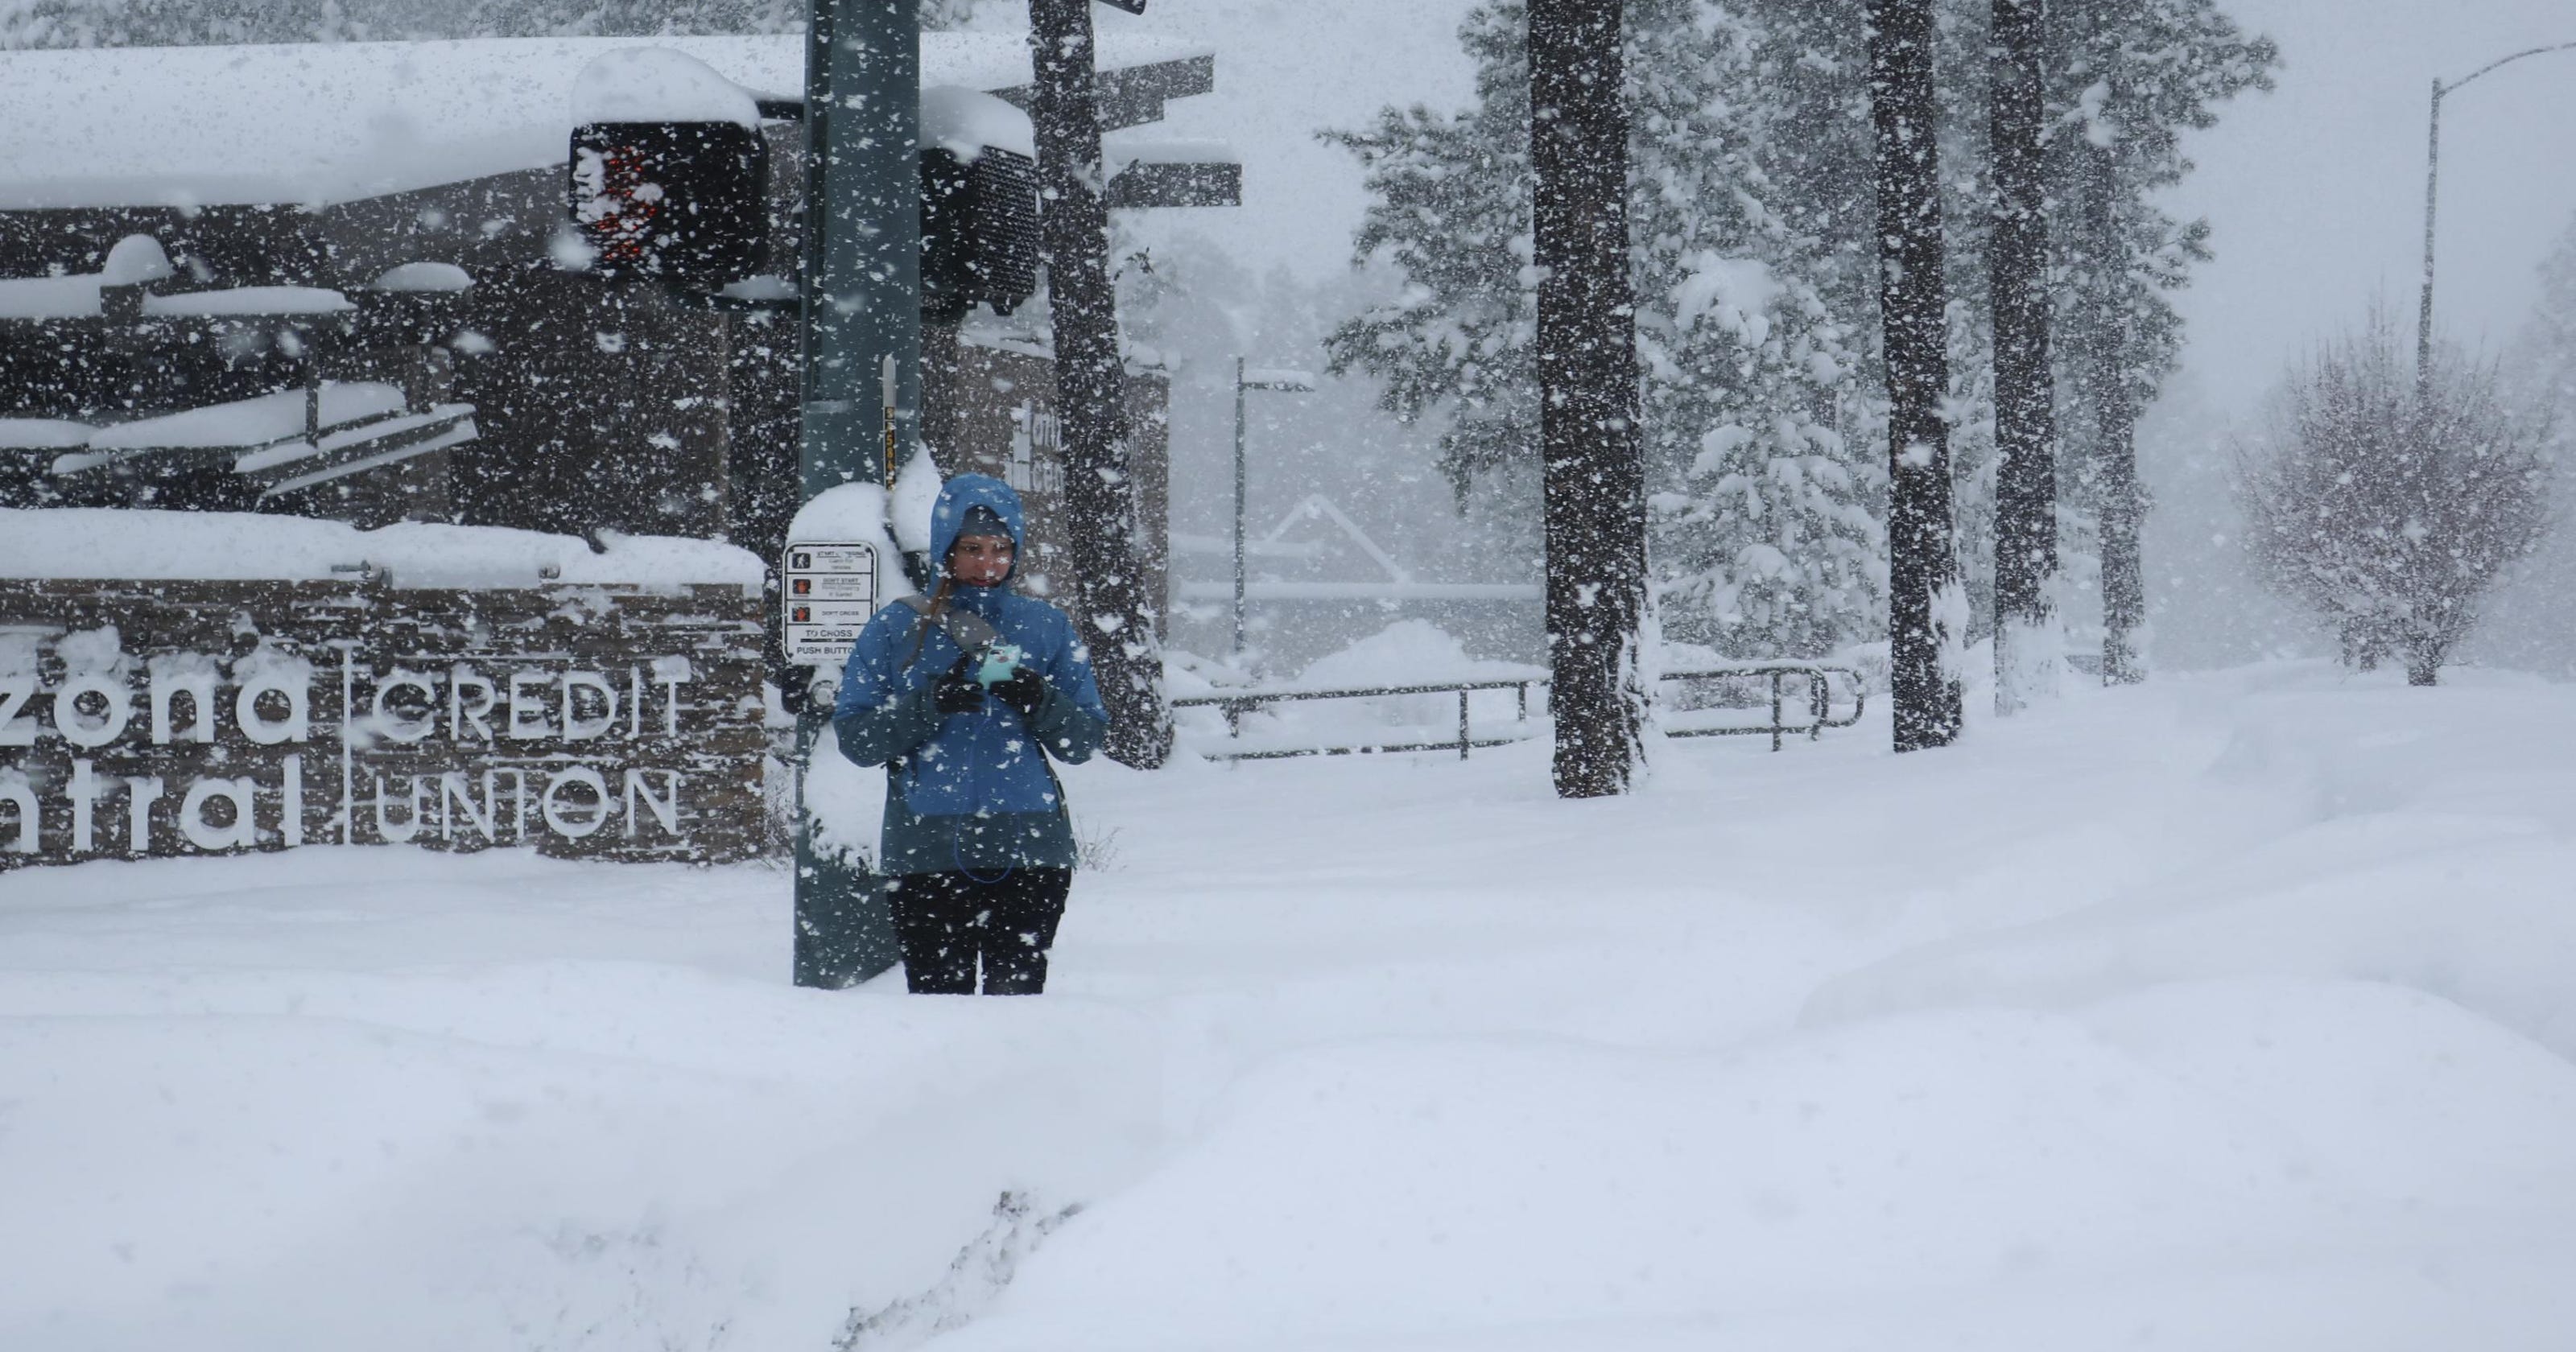 Winter storm brings record snowfall to parts of Arizona